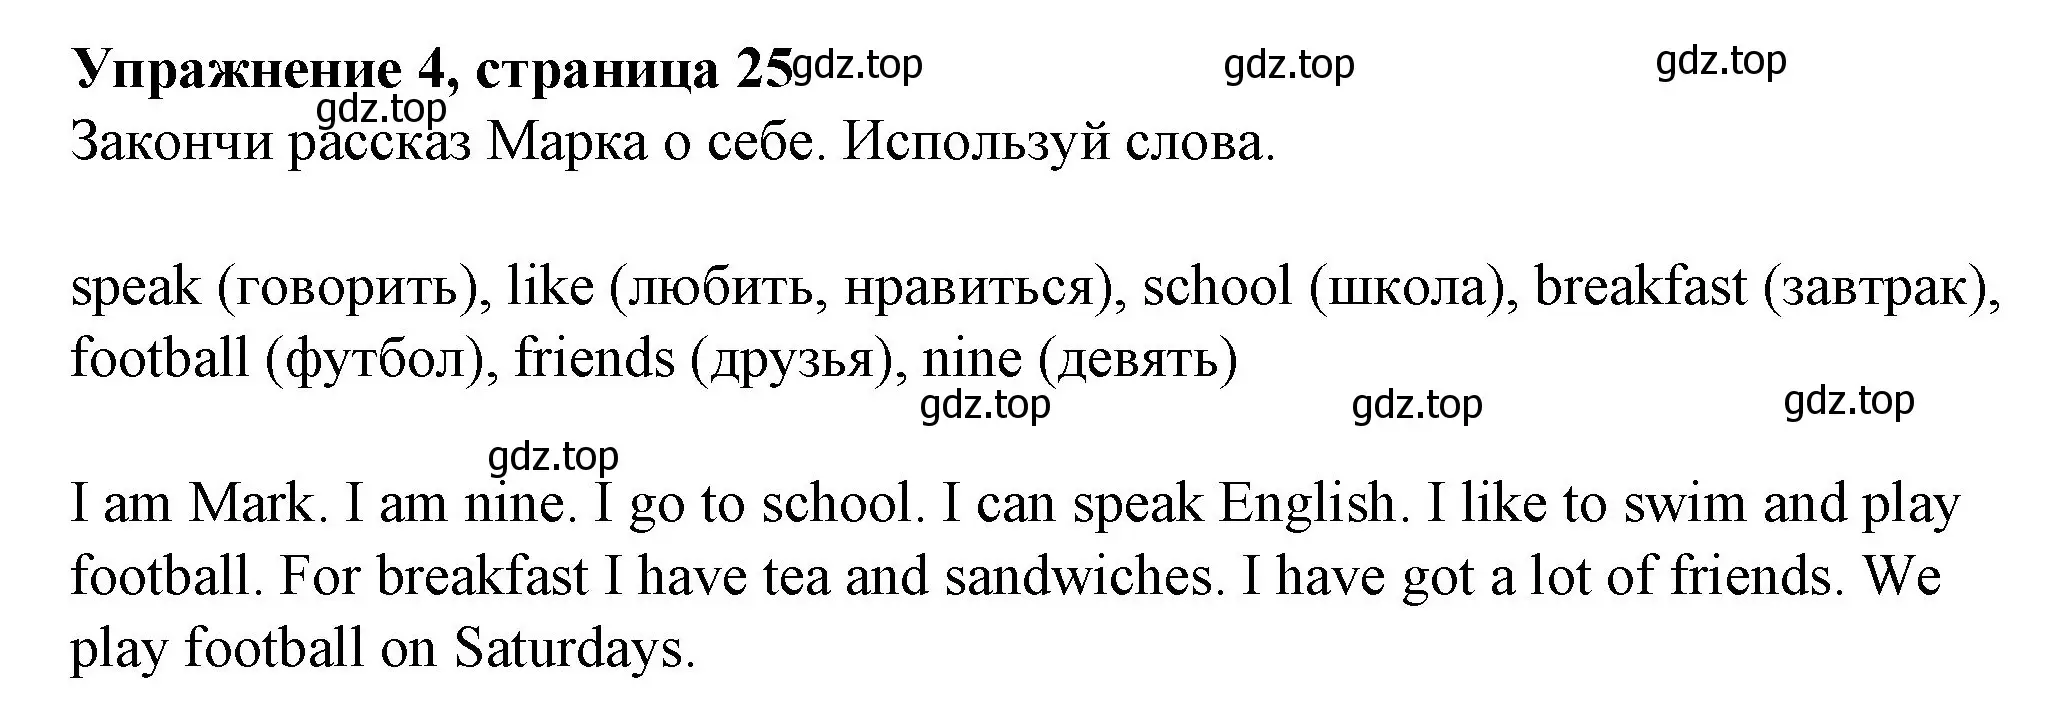 Решение номер 4 (страница 25) гдз по английскому языку 3 класс Биболетова, Денисенко, рабочая тетрадь